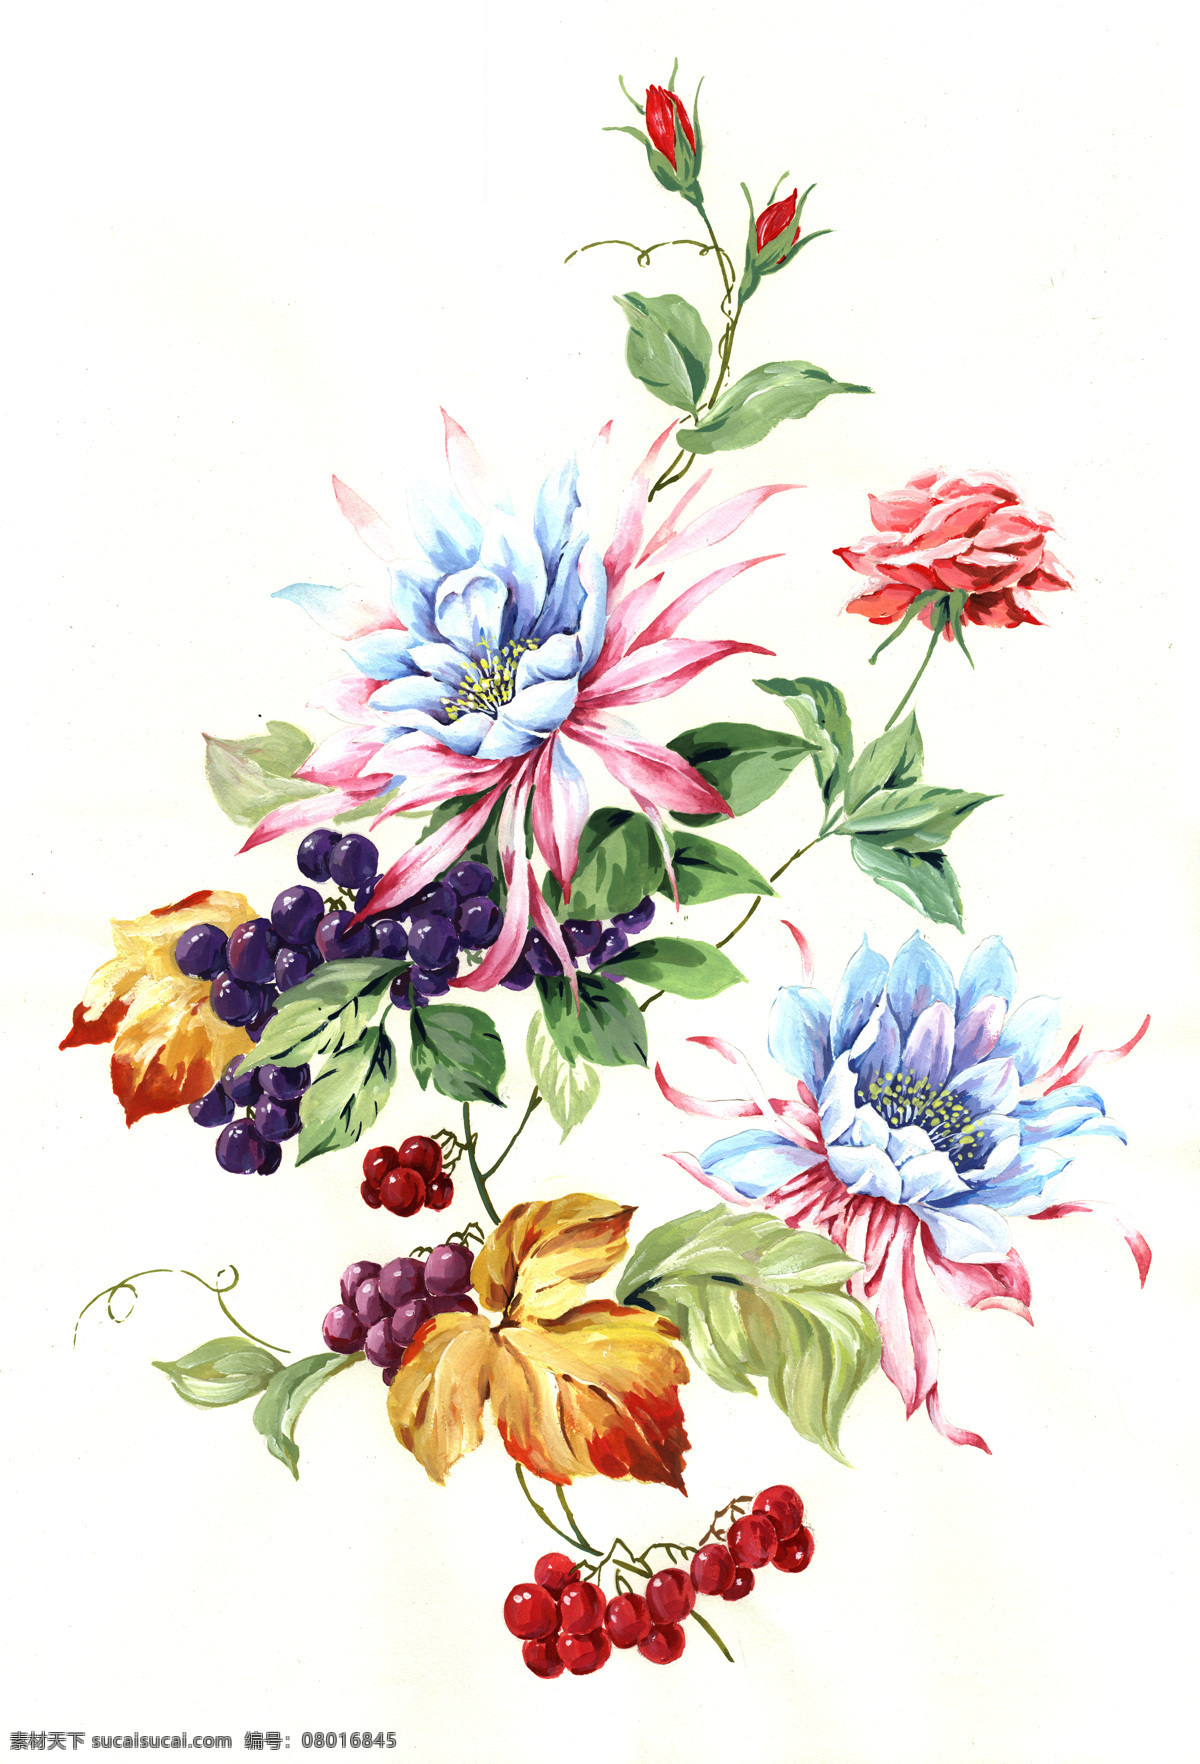 水彩花卉 手绘 水彩 花卉 水果 葡萄 花朵 文化艺术 绘画书法